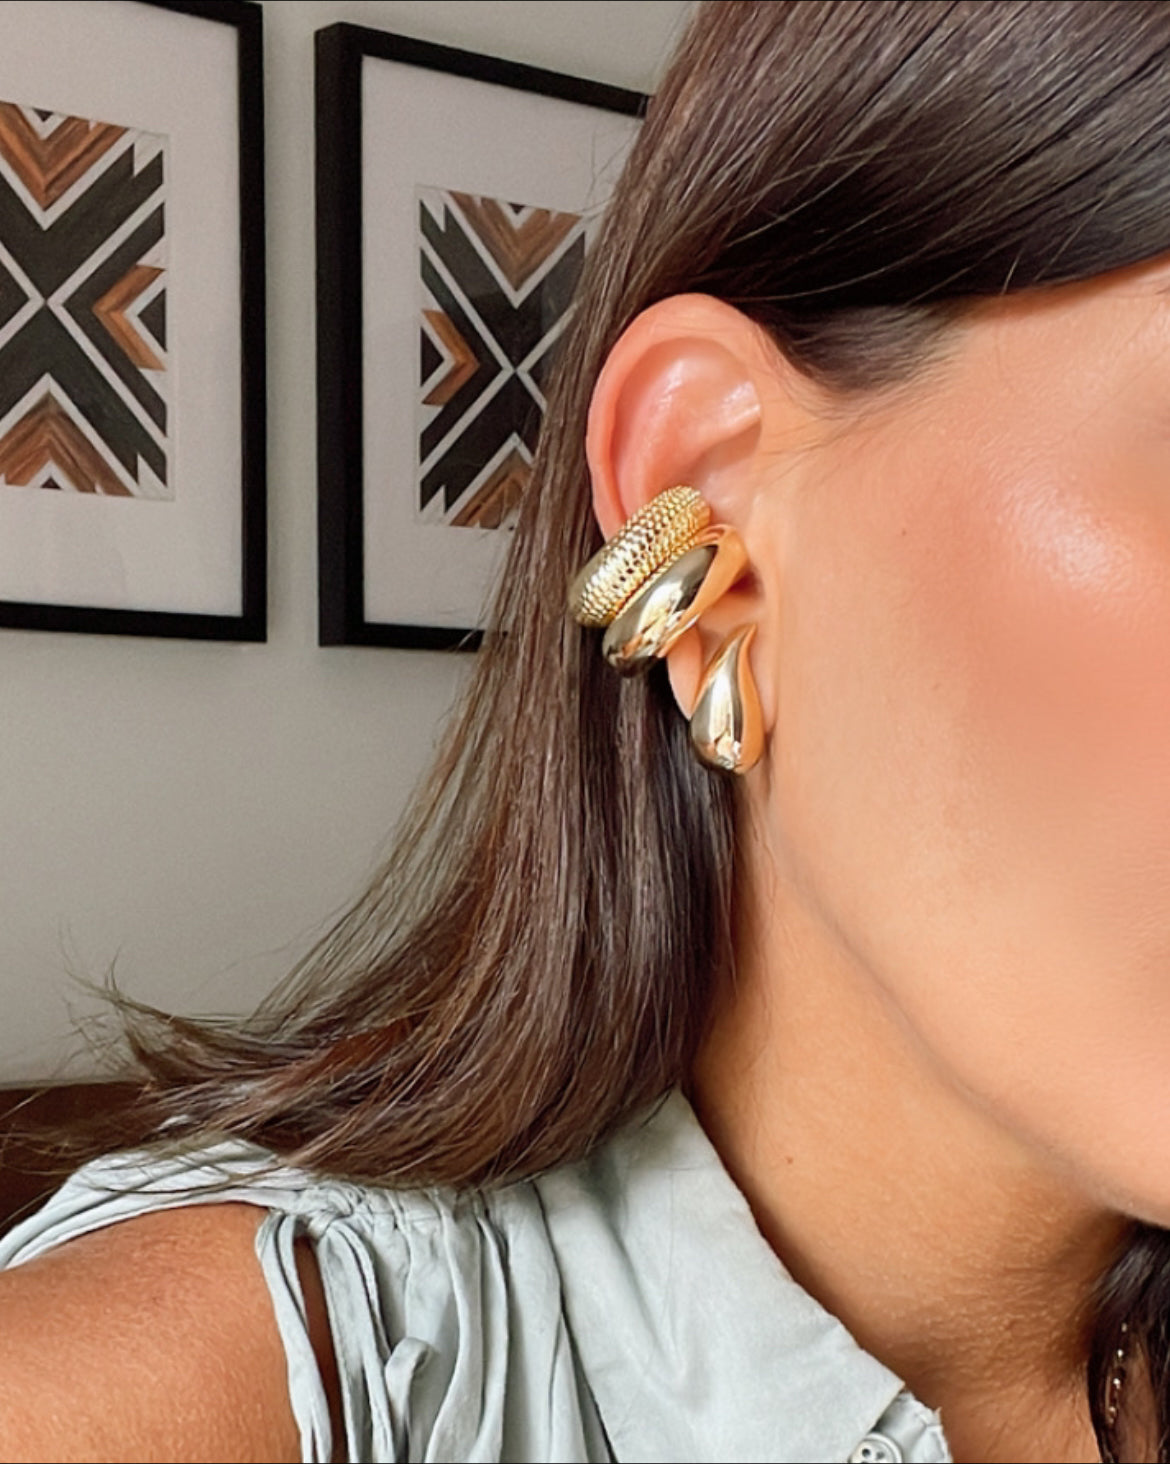 XL earcuff earrings